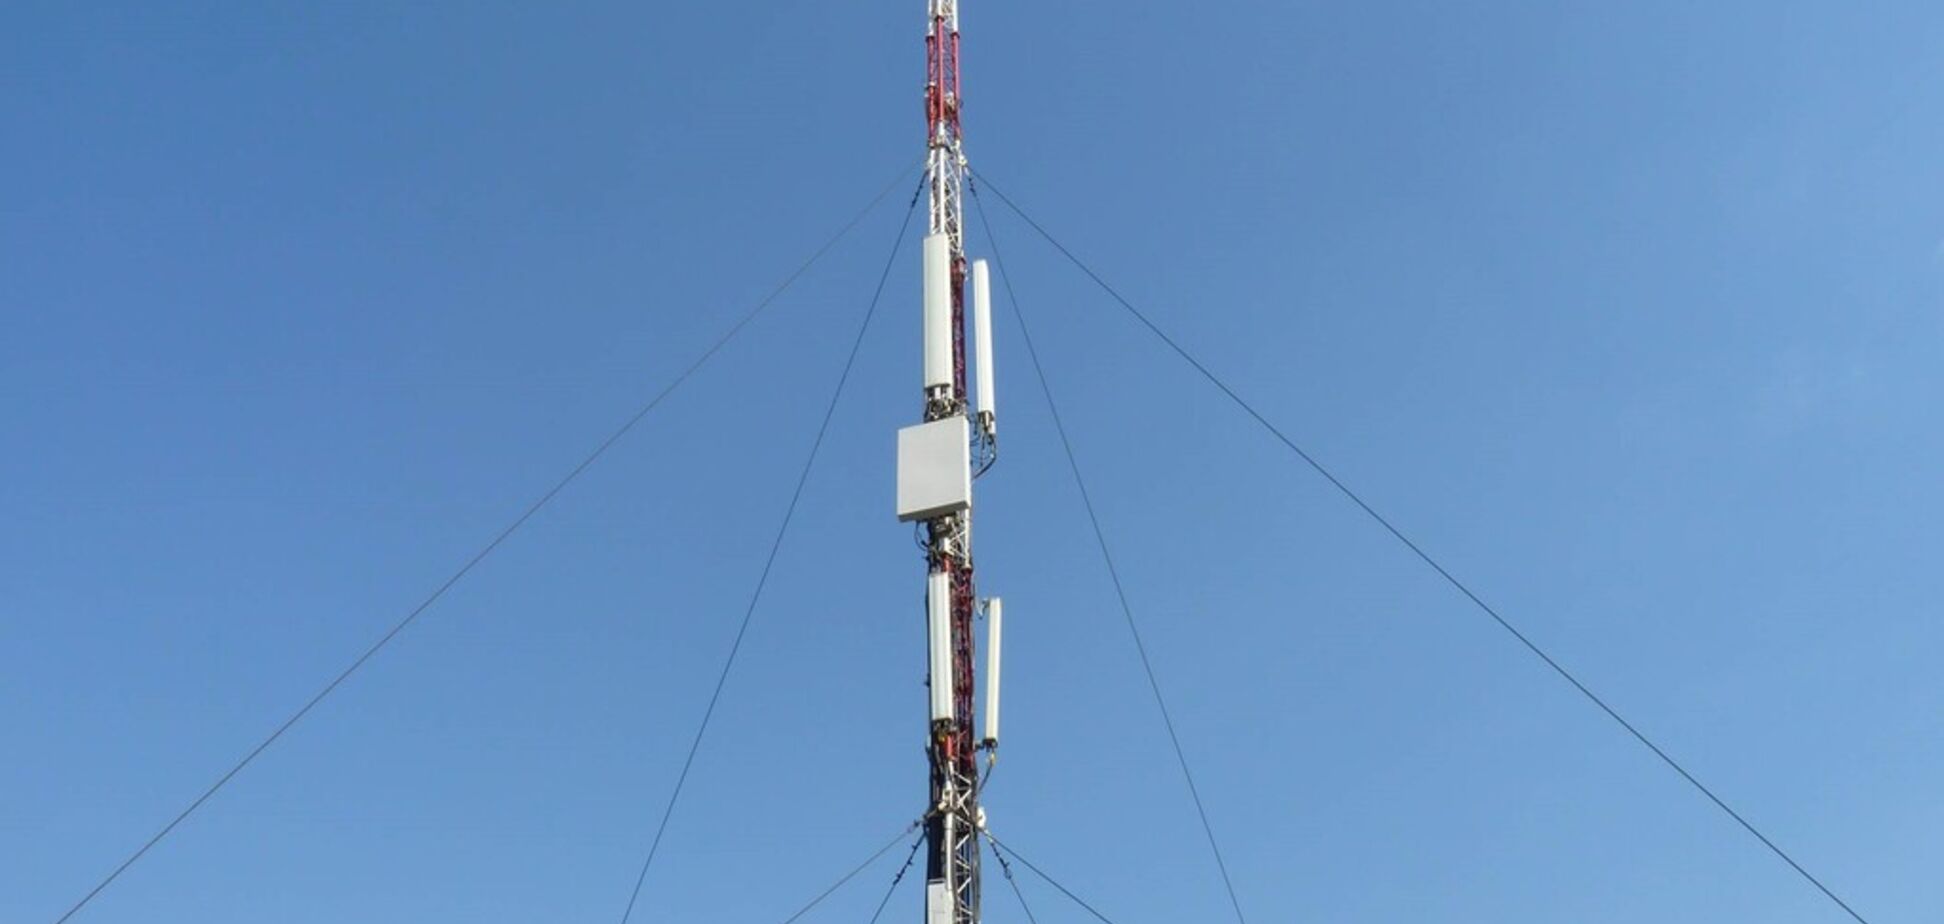 Київстар продемонстрував базову станцію для мереж 5G